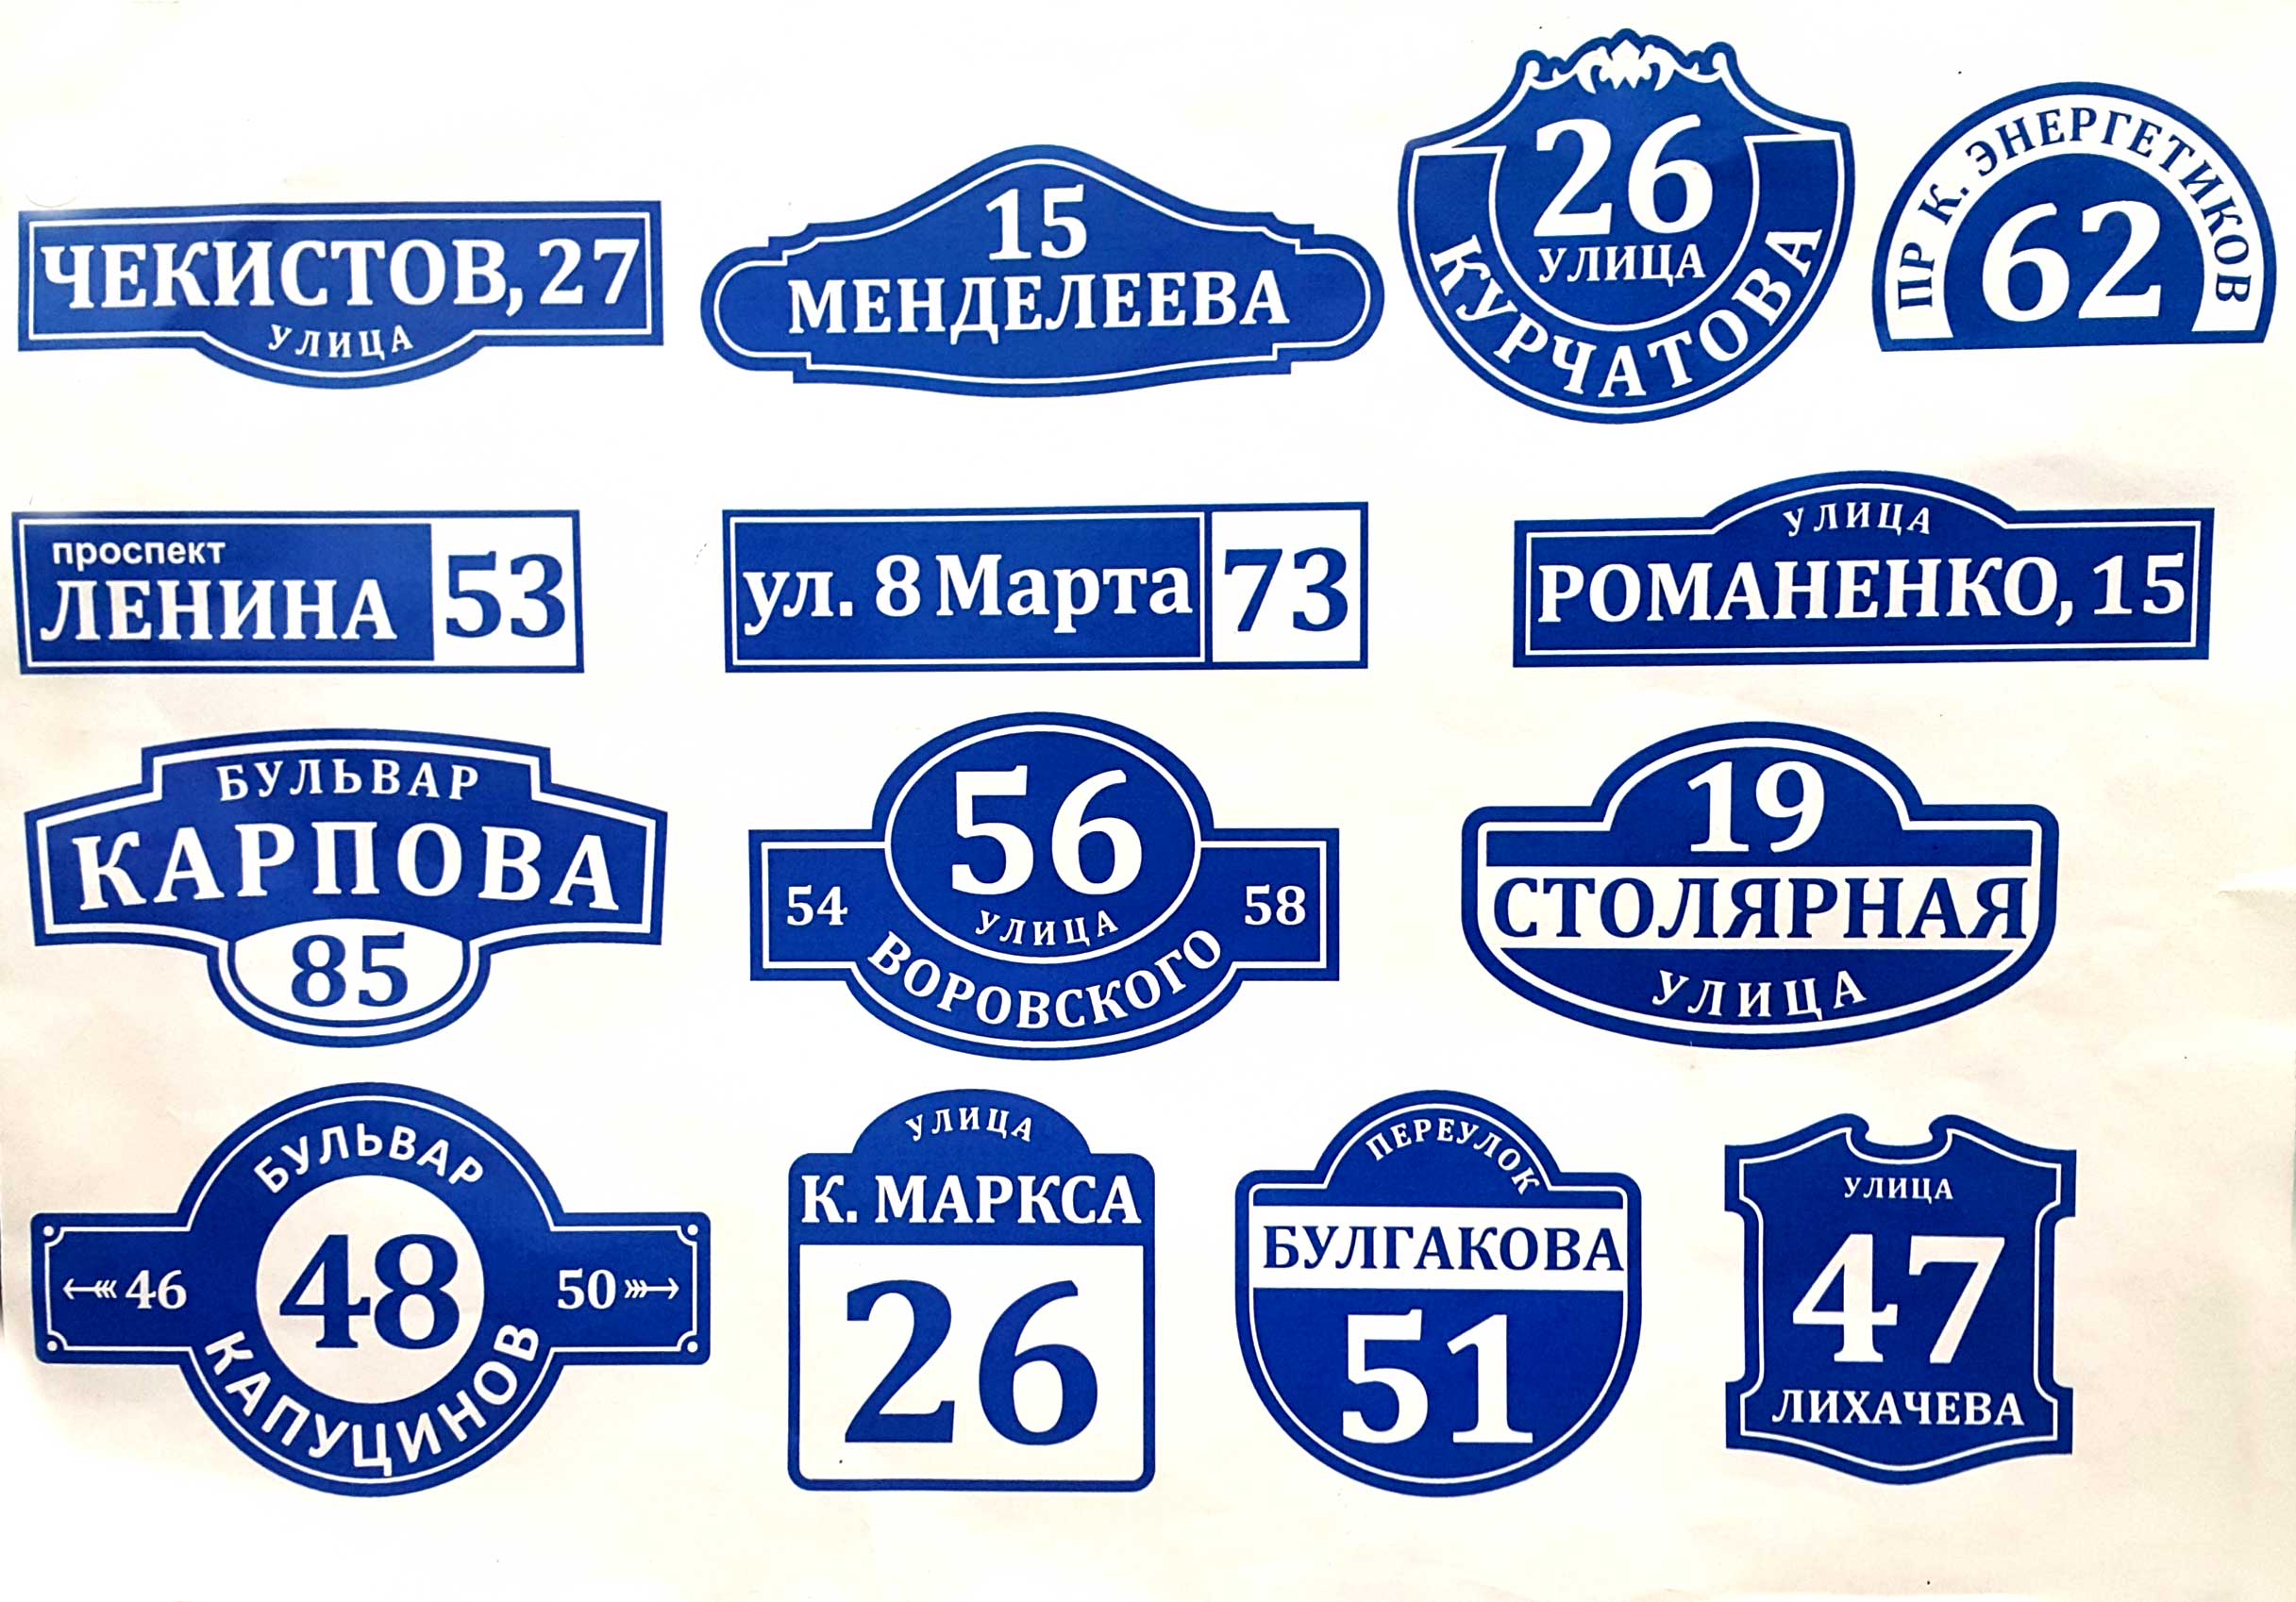 Адресные таблички в Ижевске